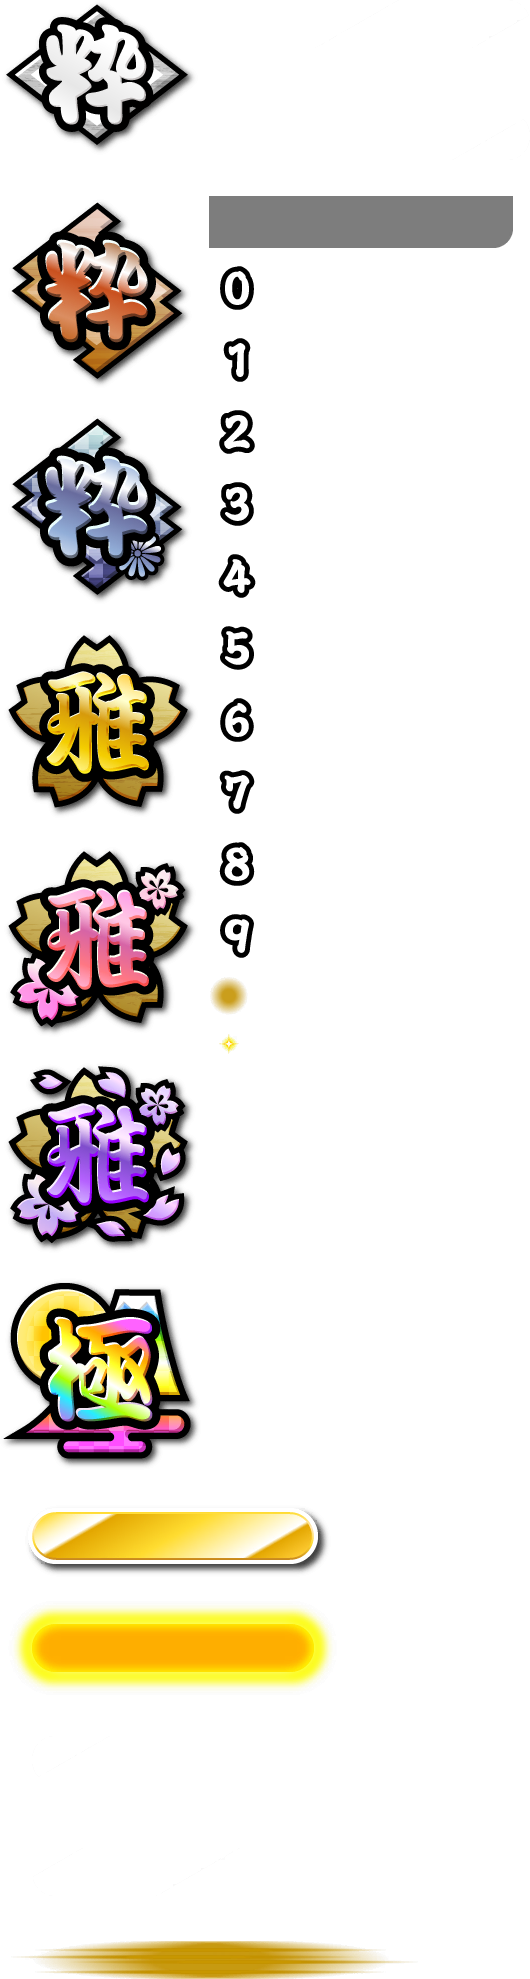 Taiko no Tatsujin (2020 Version) - In-game Score Badges